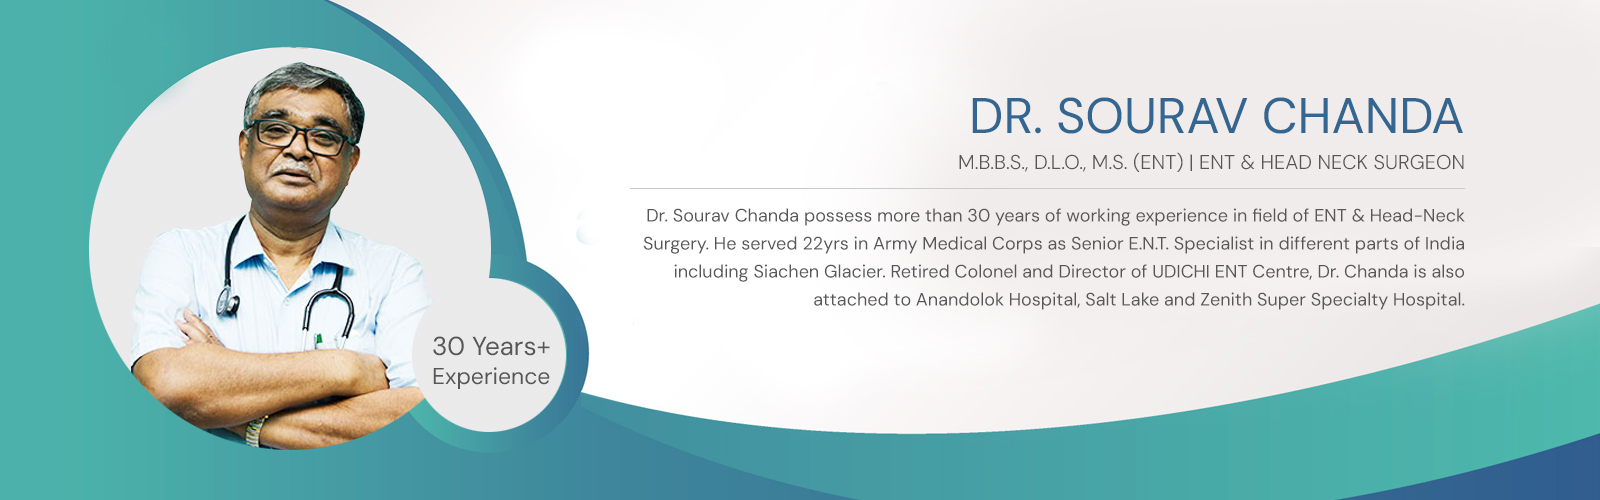 Dr. Sourav Chanda